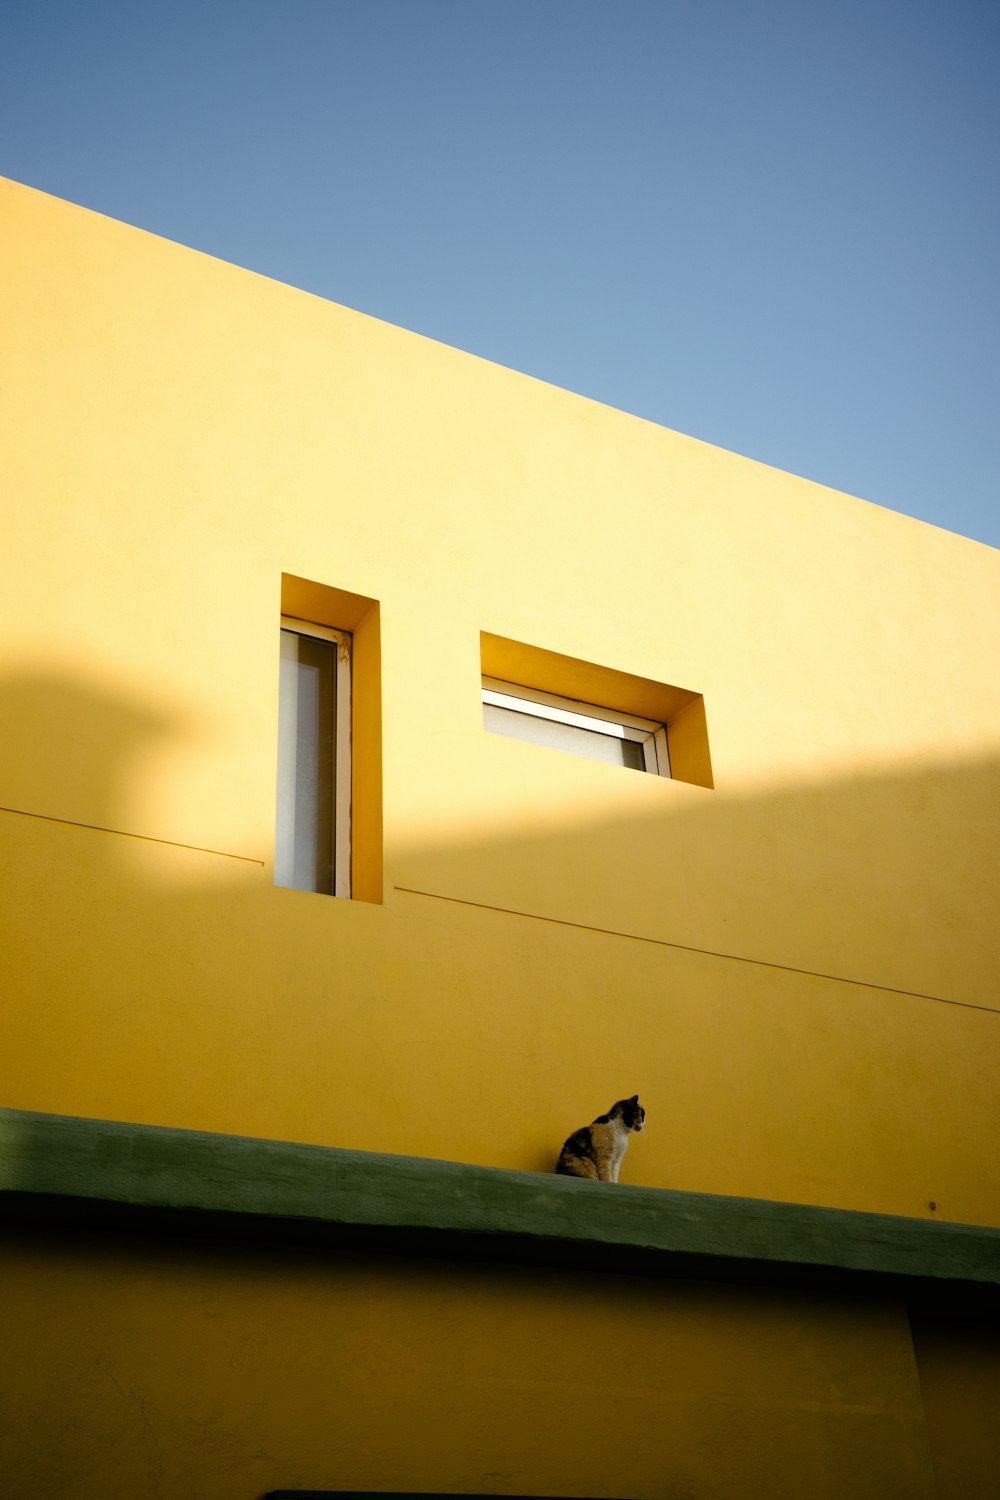 노란 건물 꼭대기에 앉아 있는 흑백 고양이